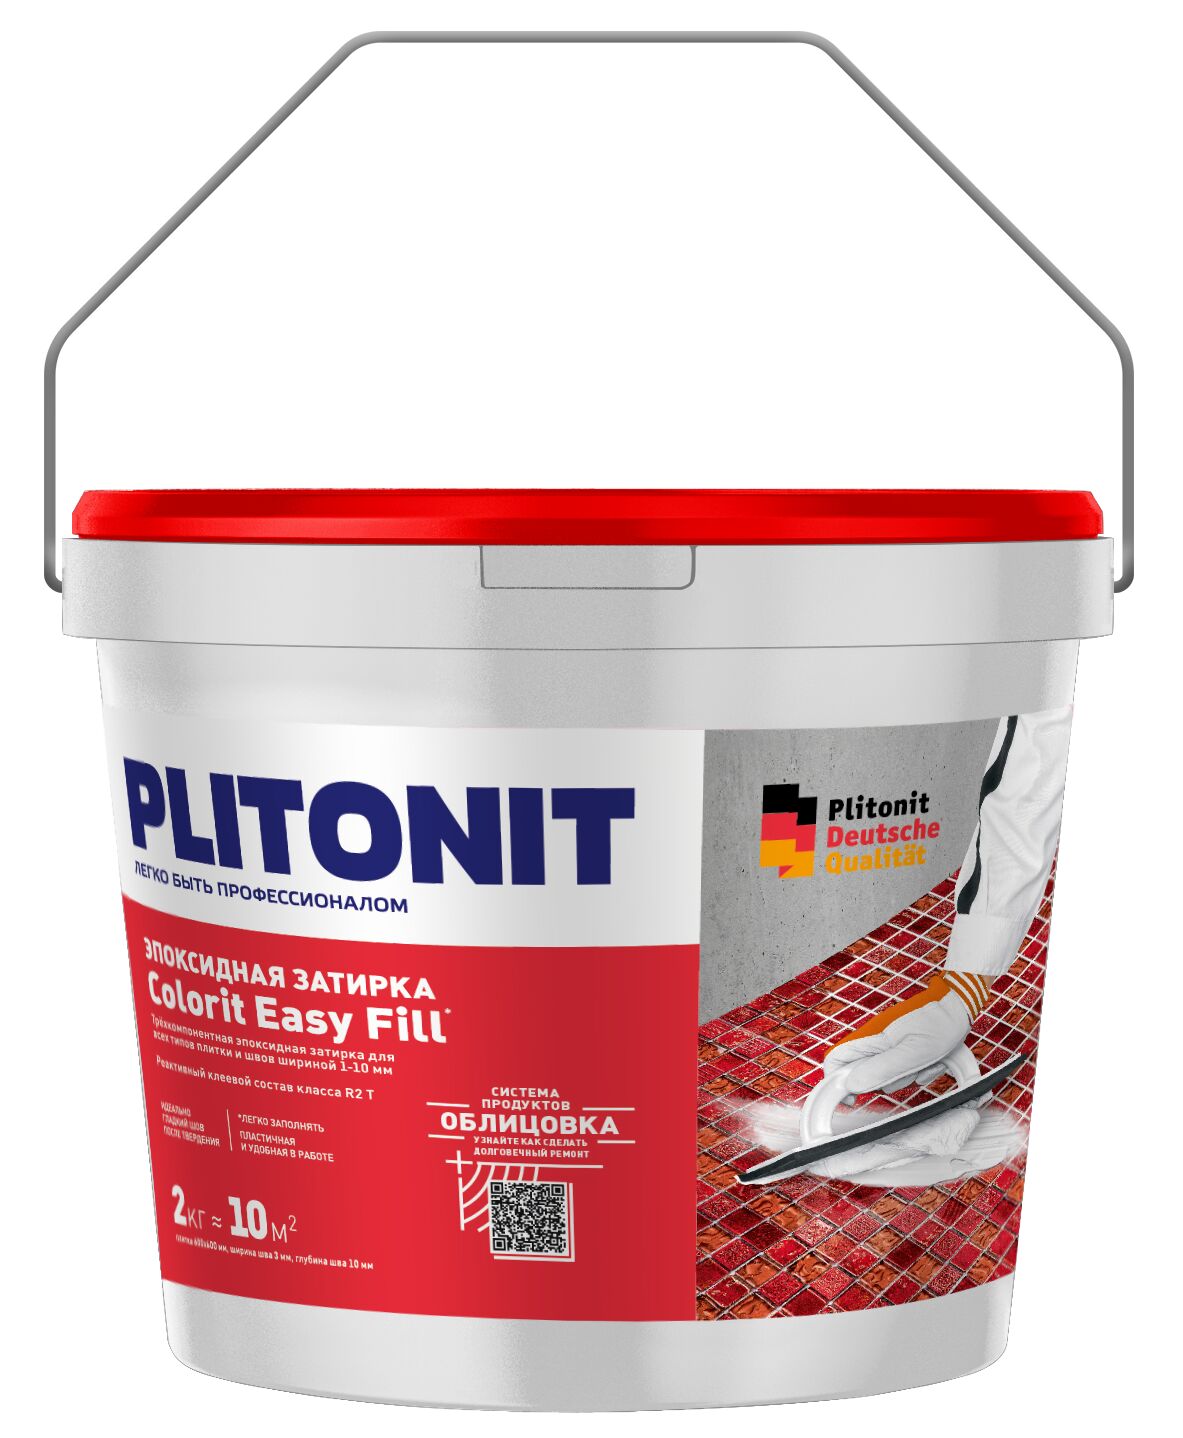 PLITONIT Colorit EasyFill АНТРАЦИТ - 2 эпоксидная затирка для межплиточных швов и реактивный клей для плитки , PLITONIT Colorit EasyFill антрацит - 2 эпоксидная затирка для межплиточных швов и реактивный клей для плитки 